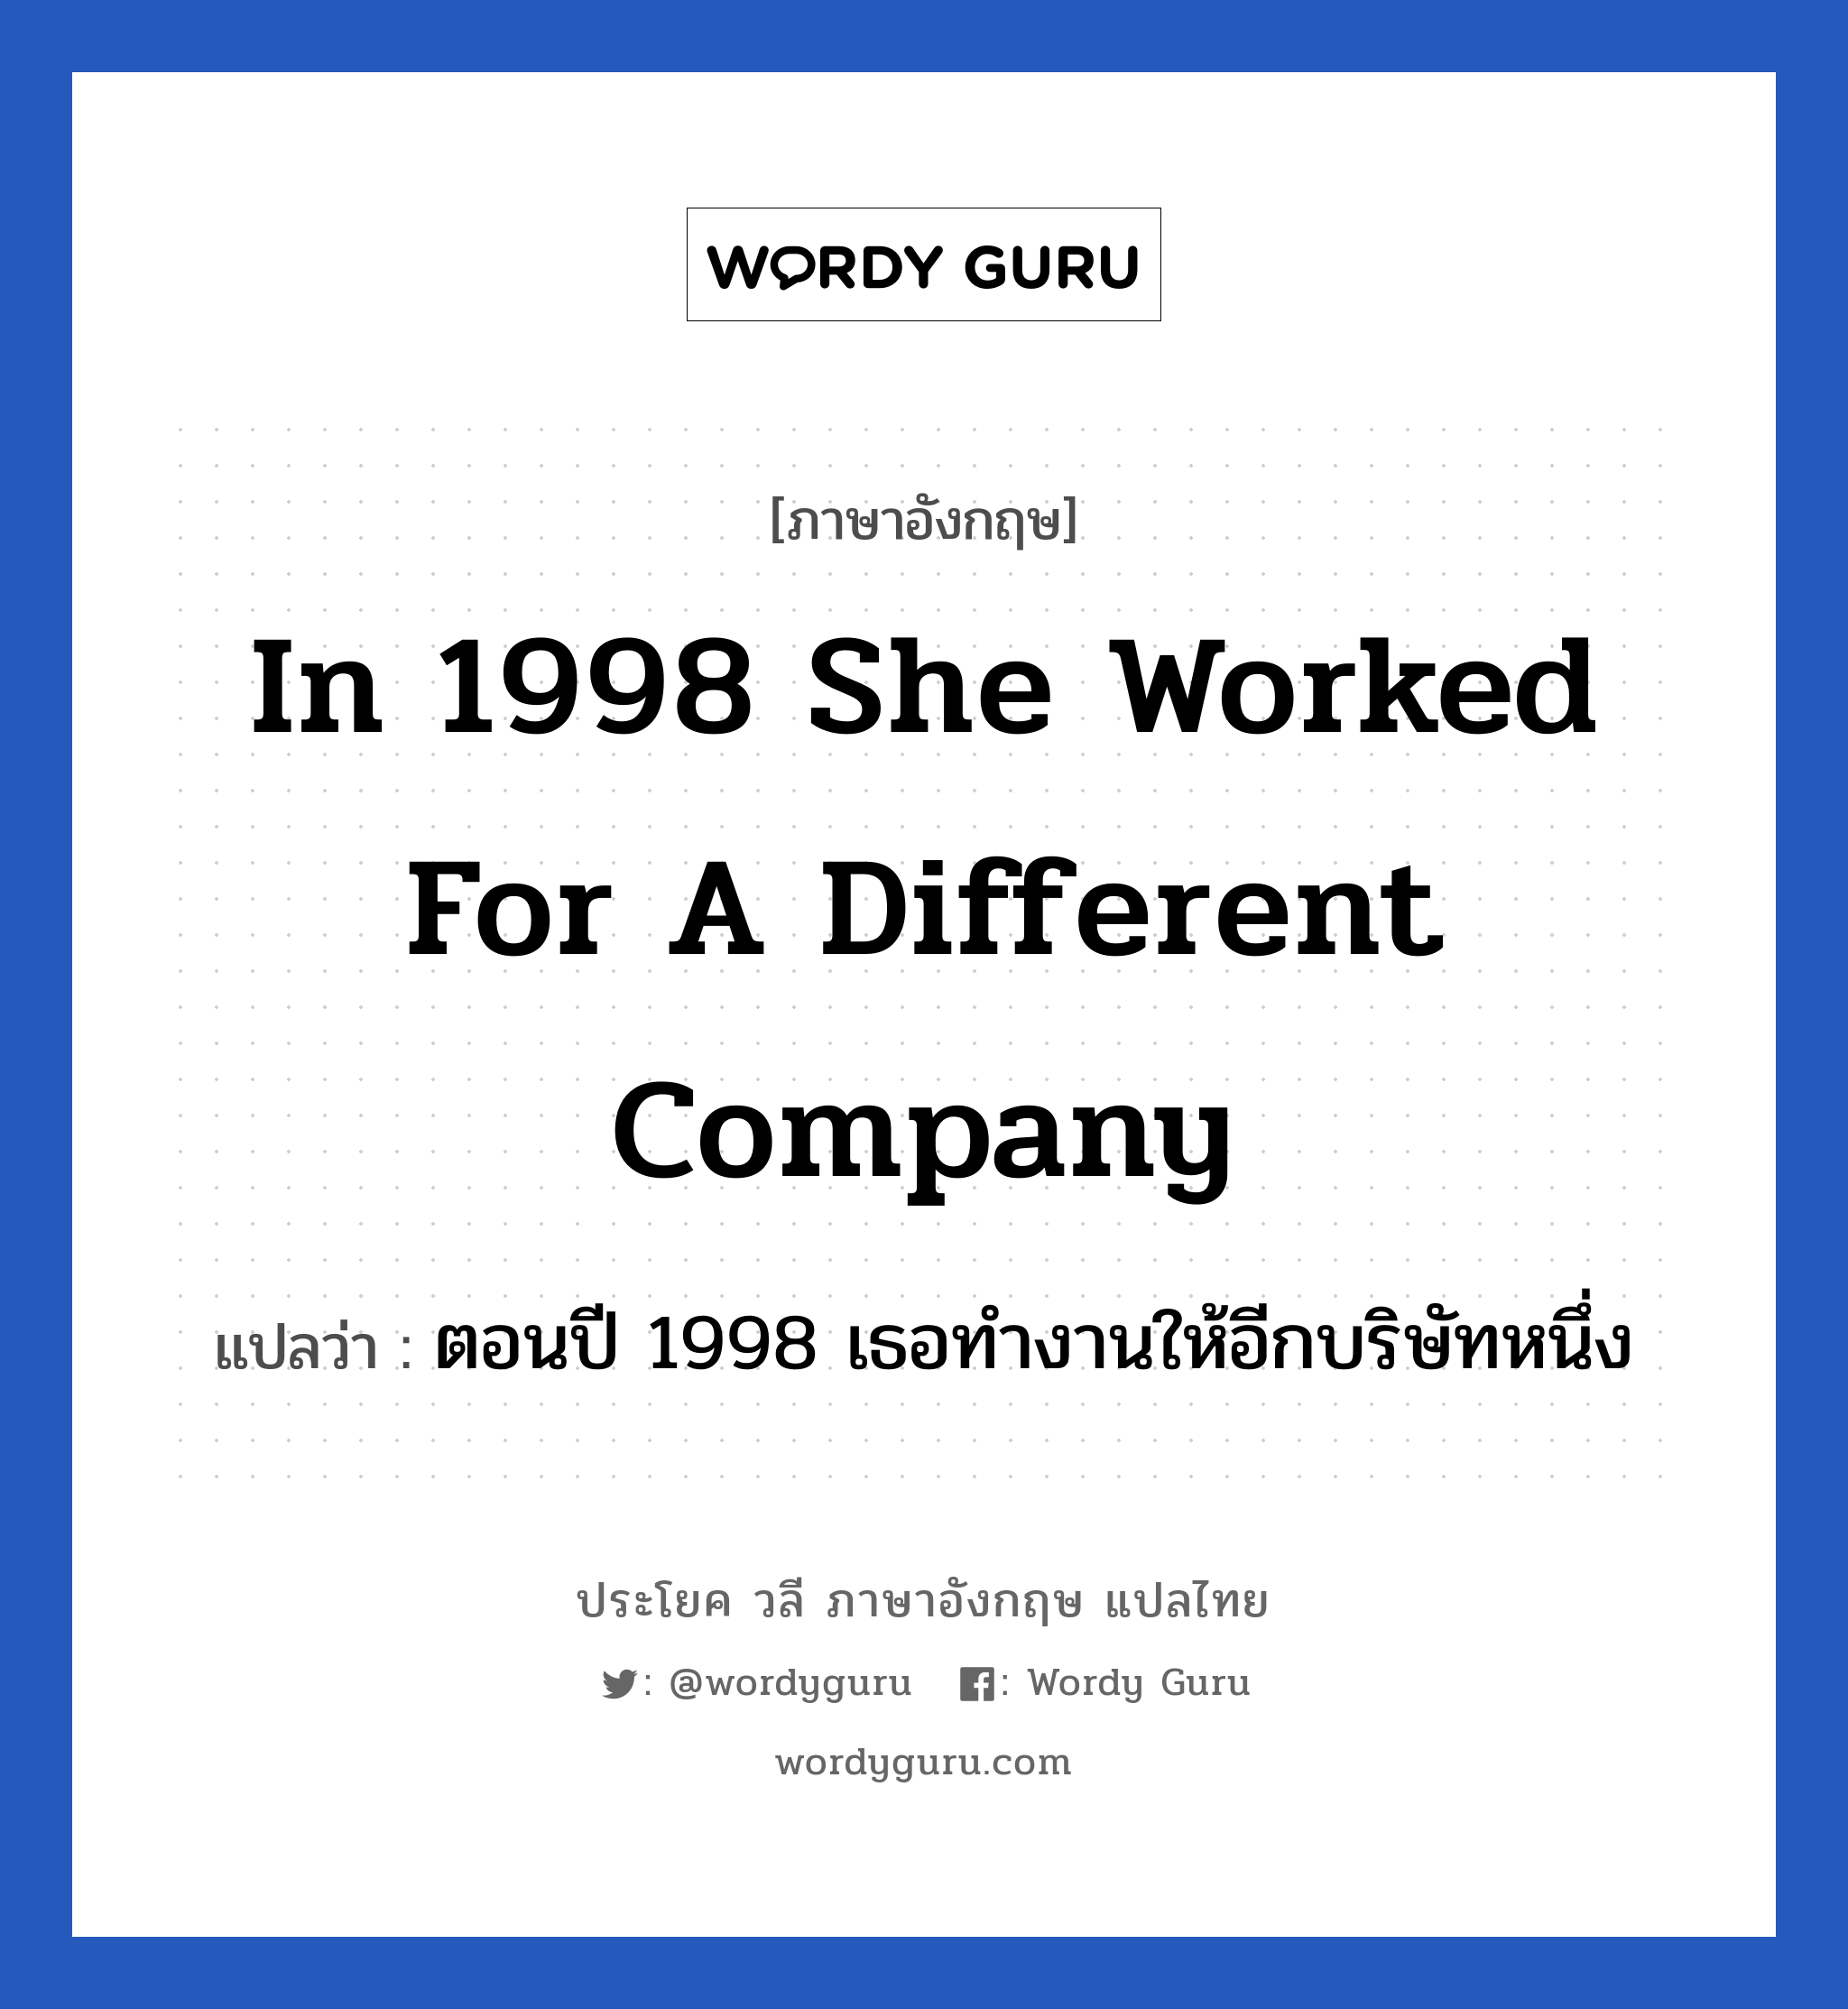 In 1998 she worked for a different company แปลว่า? เป็นประโยคในกลุ่มประเภท ในที่ทำงาน, วลีภาษาอังกฤษ In 1998 she worked for a different company แปลว่า ตอนปี 1998 เธอทำงานให้อีกบริษัทหนึ่ง หมวด ในที่ทำงาน